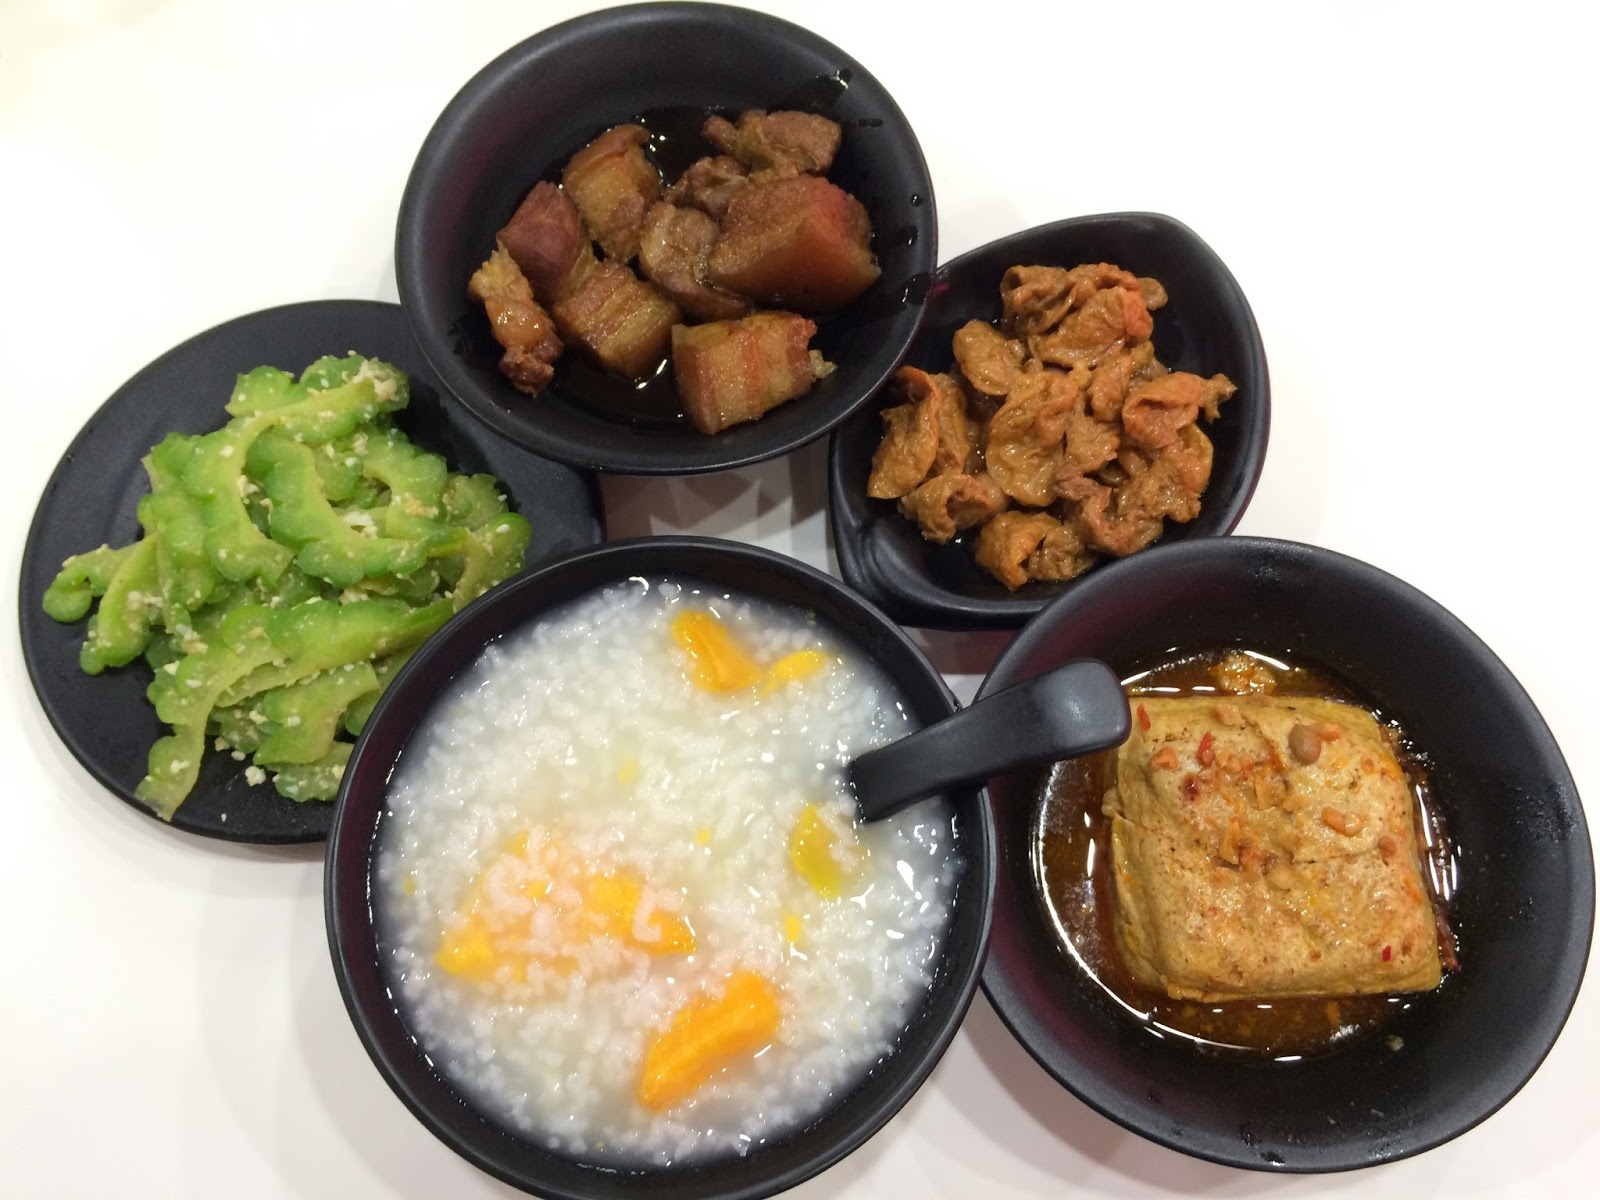 清粥小菜 Congee and Side Dishes – Laura's Kitchen 蘿拉廚房